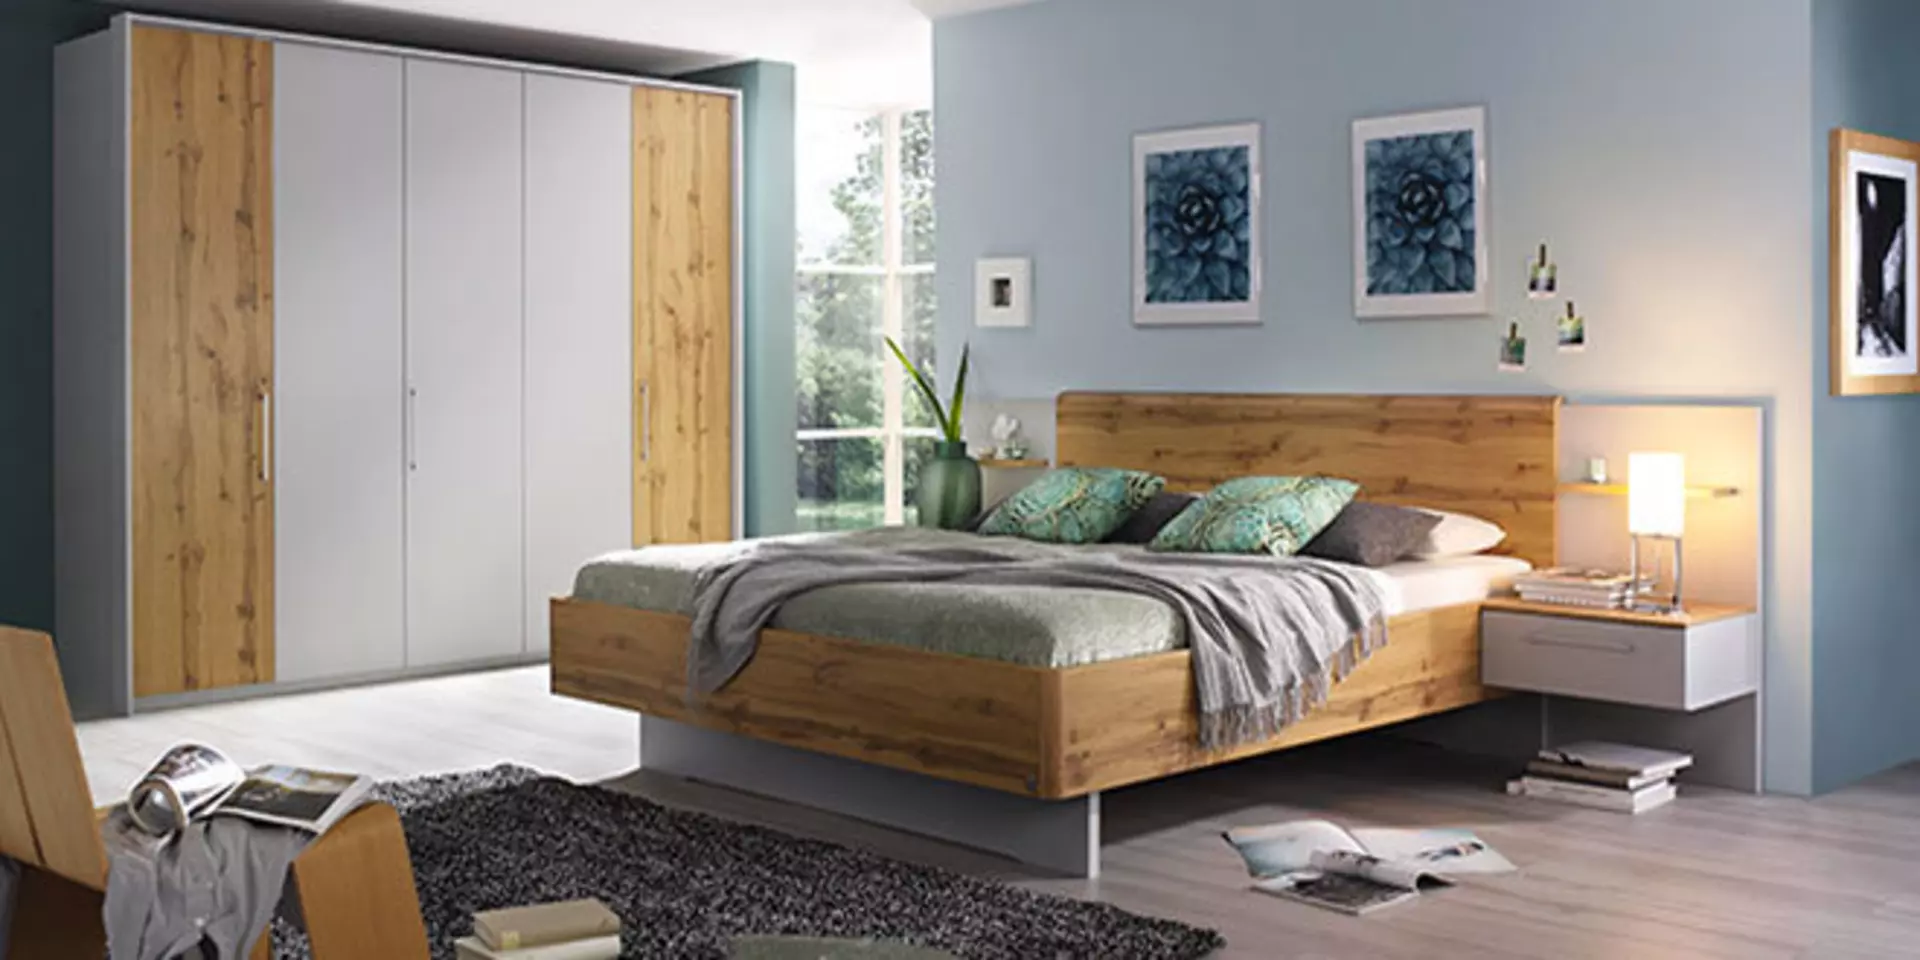 Titelbild auf der Markenseite von Vito zeigt ein Schlafzimmer aus Holz..